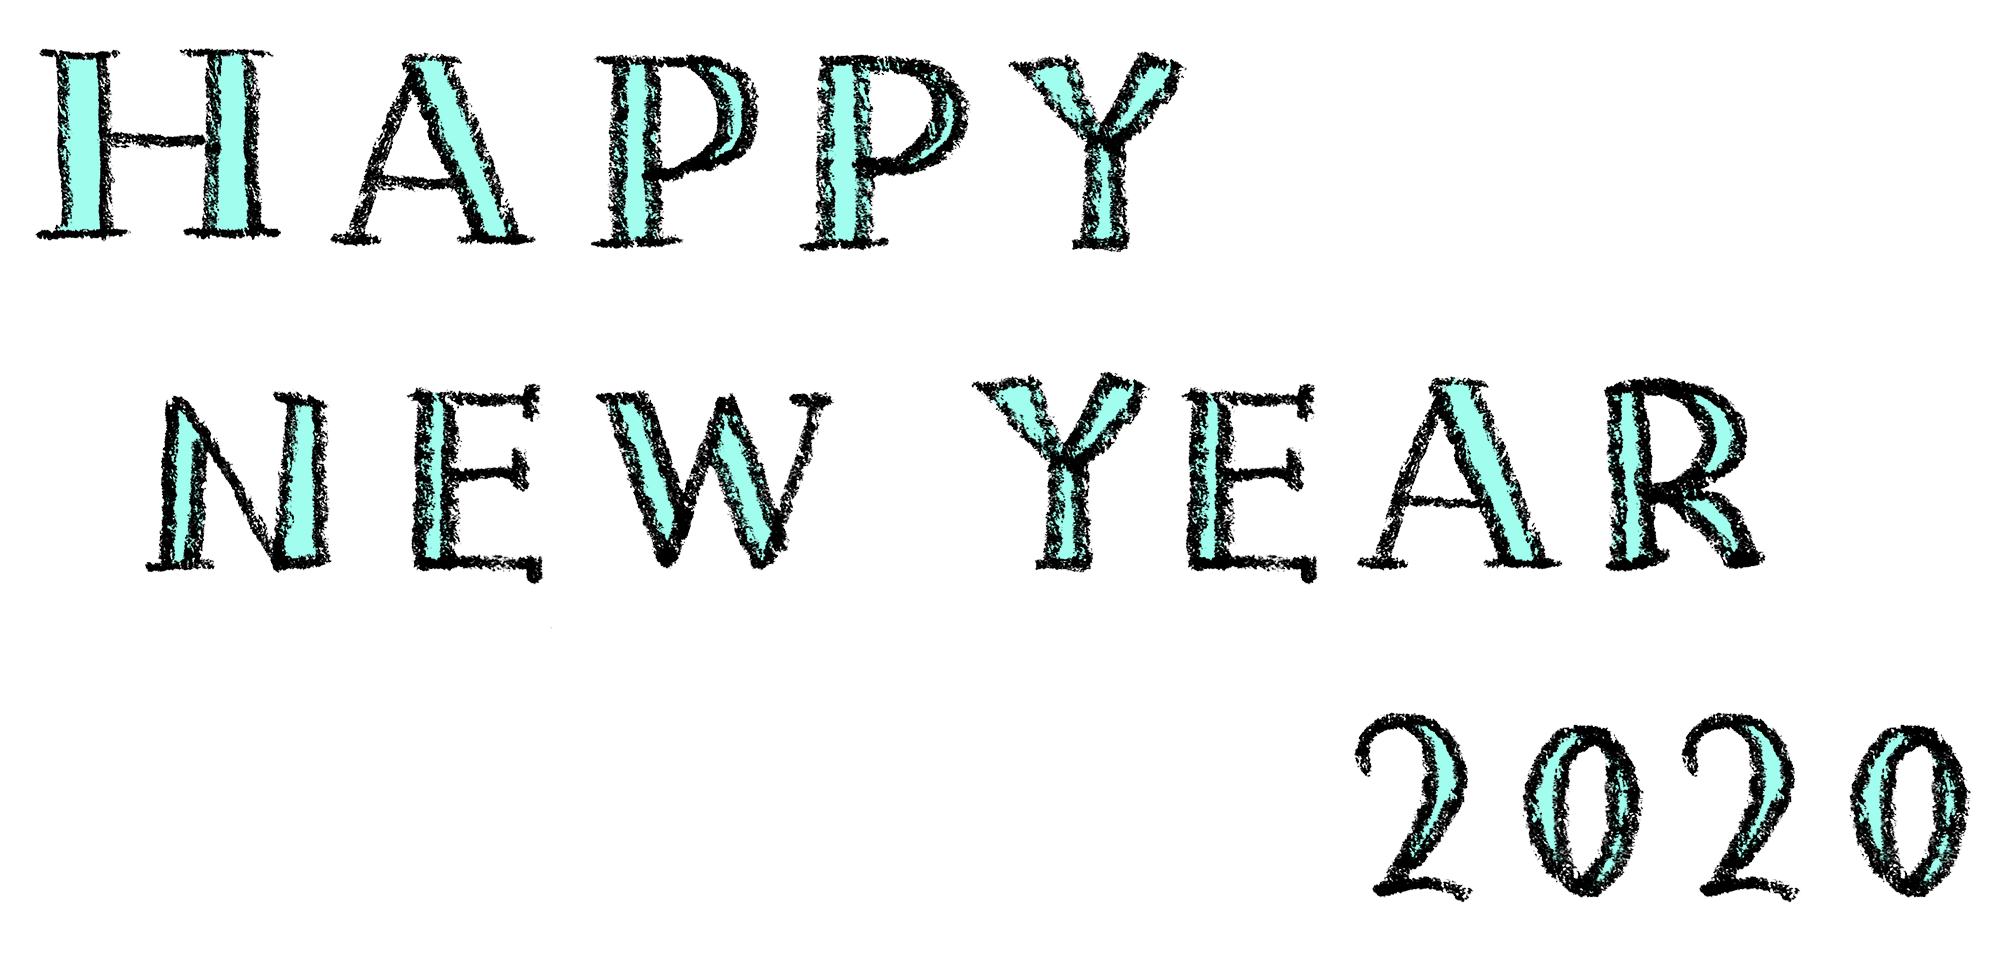 Happy New Year 2020 おしゃれでかわいい手書き文字 えんぴつと画用紙